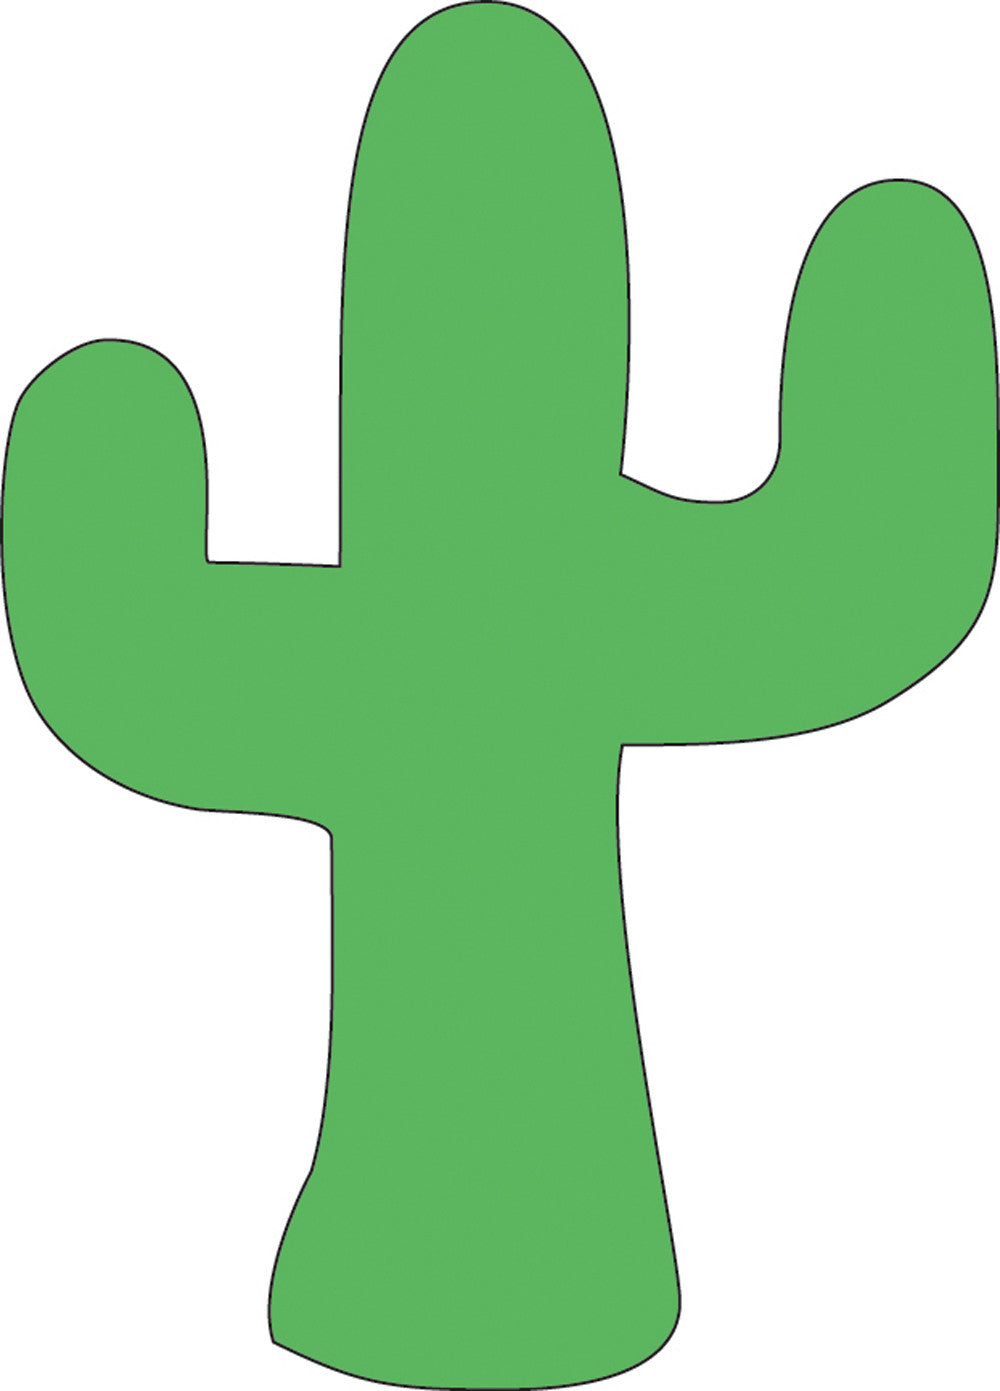 Sticky Shape Notepad - Cactus - Creative Shapes Etc.